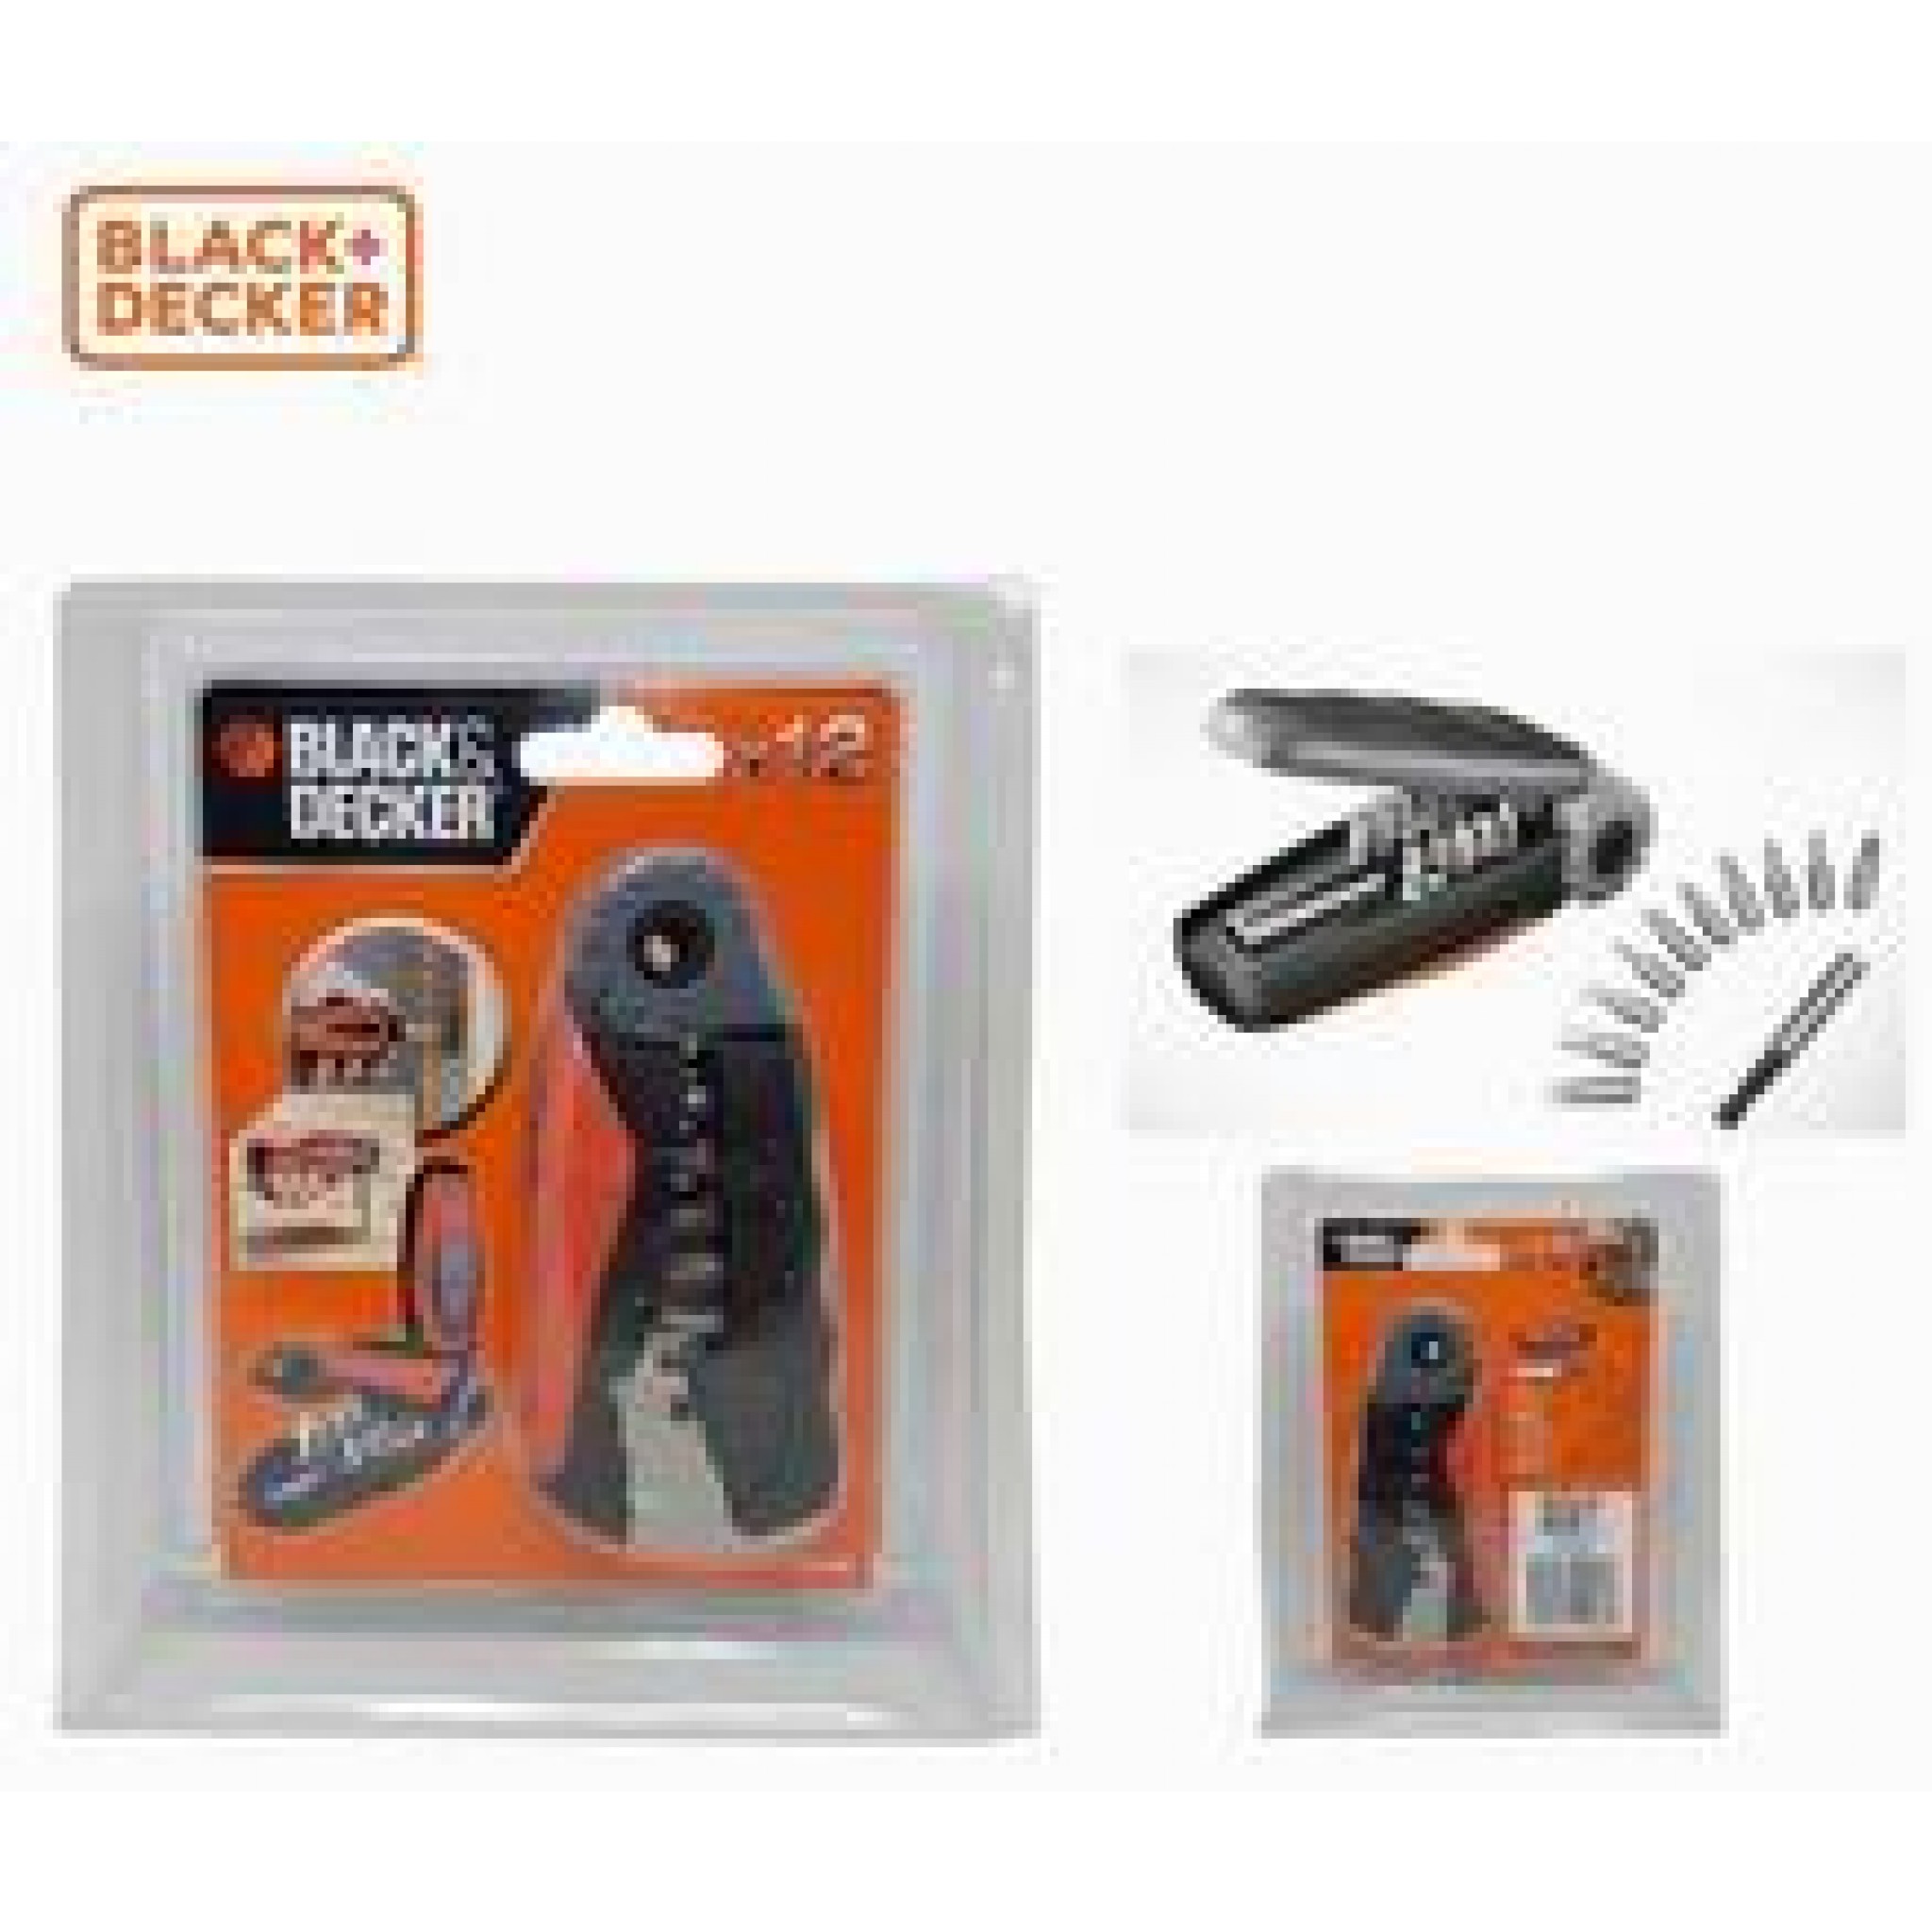 Black & Decker Hammer Drill HD4810-B5 480W Online at Best Price